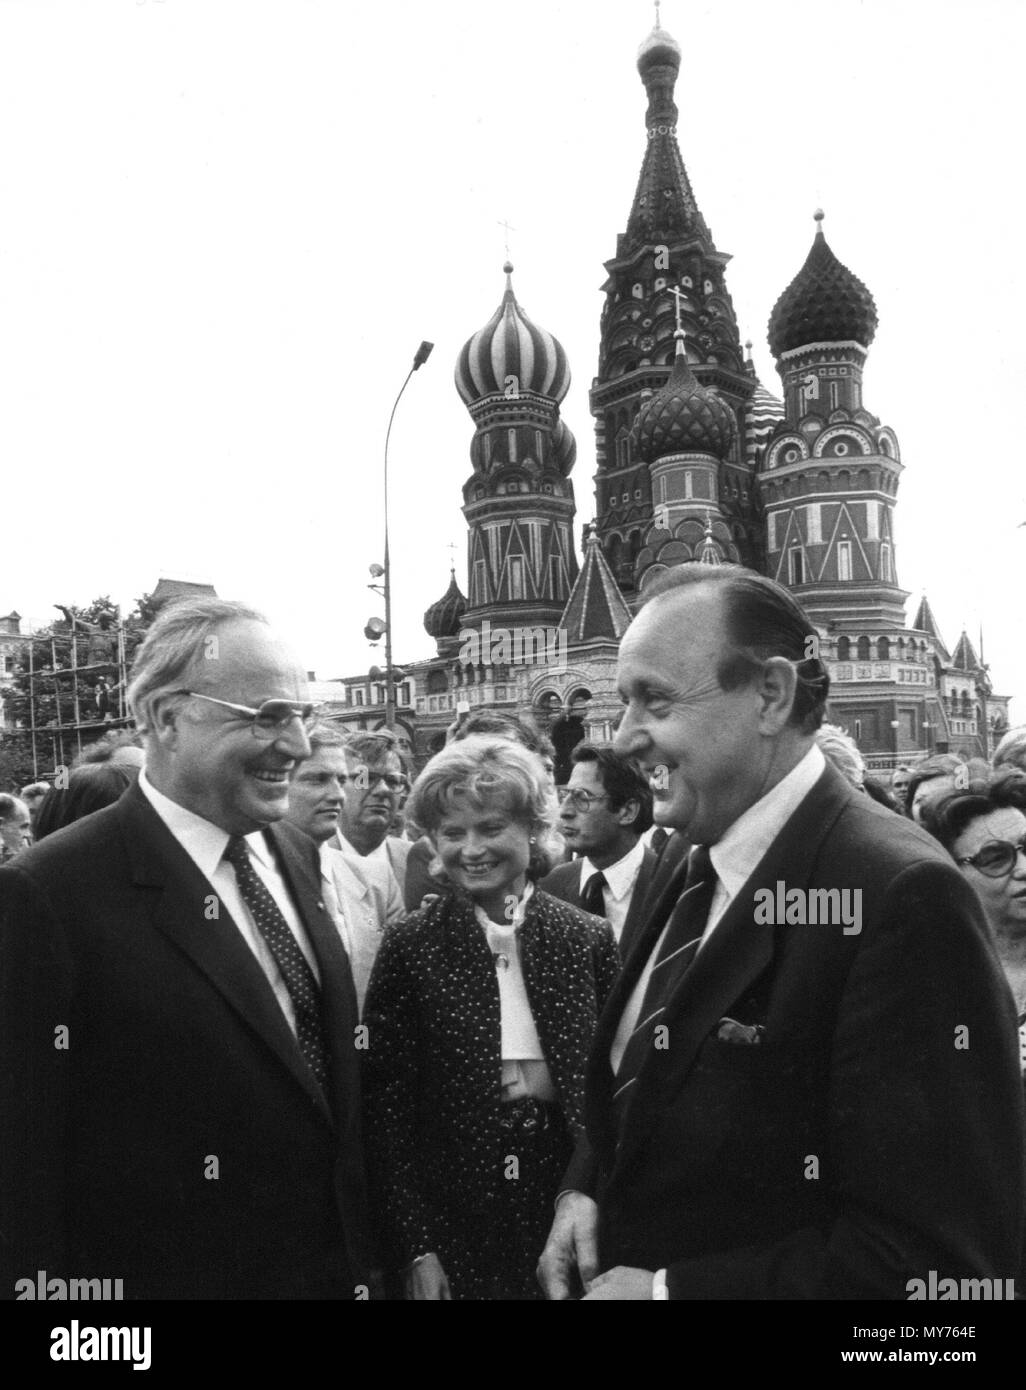 Le chancelier allemand Helmut Kohl (L), sa femme Hannelore (C) et le ministre des Affaires étrangères allemand Hans-Dietrich Genscher (R) en face de la la cathédrale Saint-Basile sur la Place Rouge à Moscou, le 6 juillet 1983. Dans le monde d'utilisation | Banque D'Images